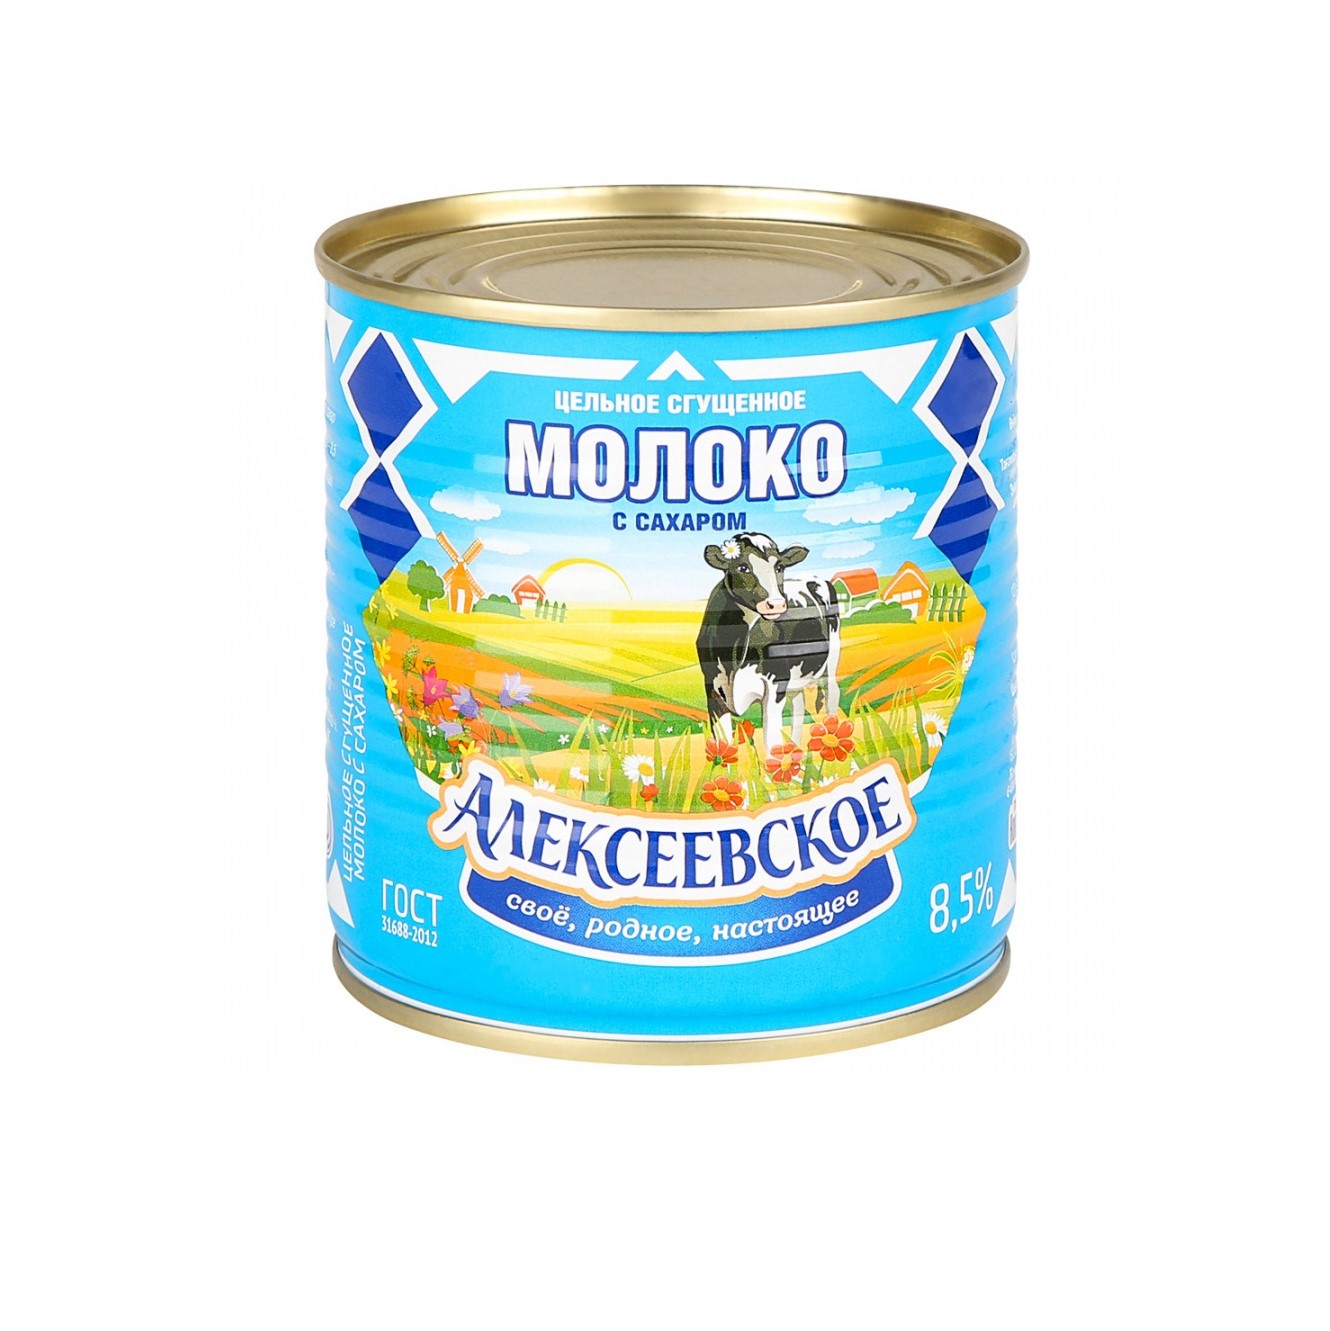 Молоко Алексеевское сгущенное с сахаром 8,5%, 360 г молоко сгущенное батькин резерв вареное с сахаром 8 5% 380 г